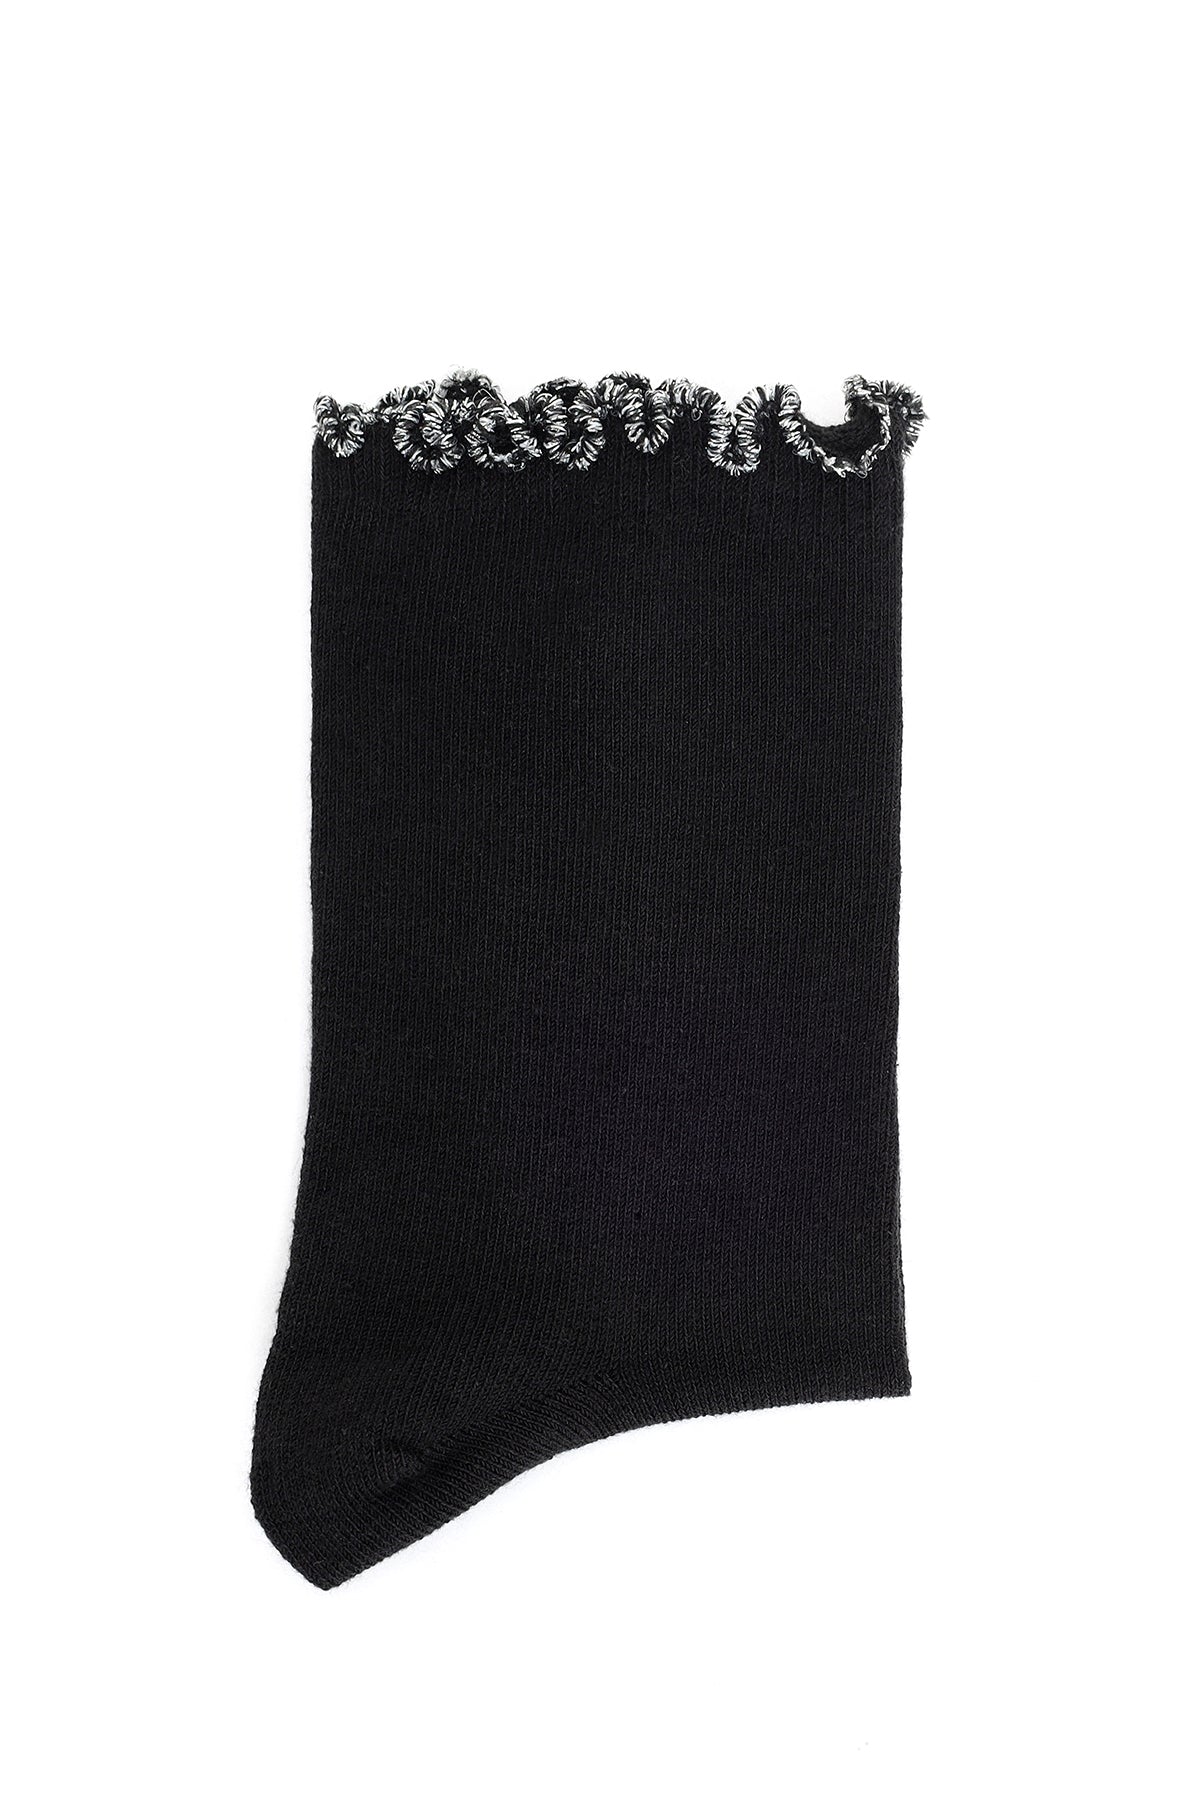 Kadın Siyah Altın Pamuk Çorap